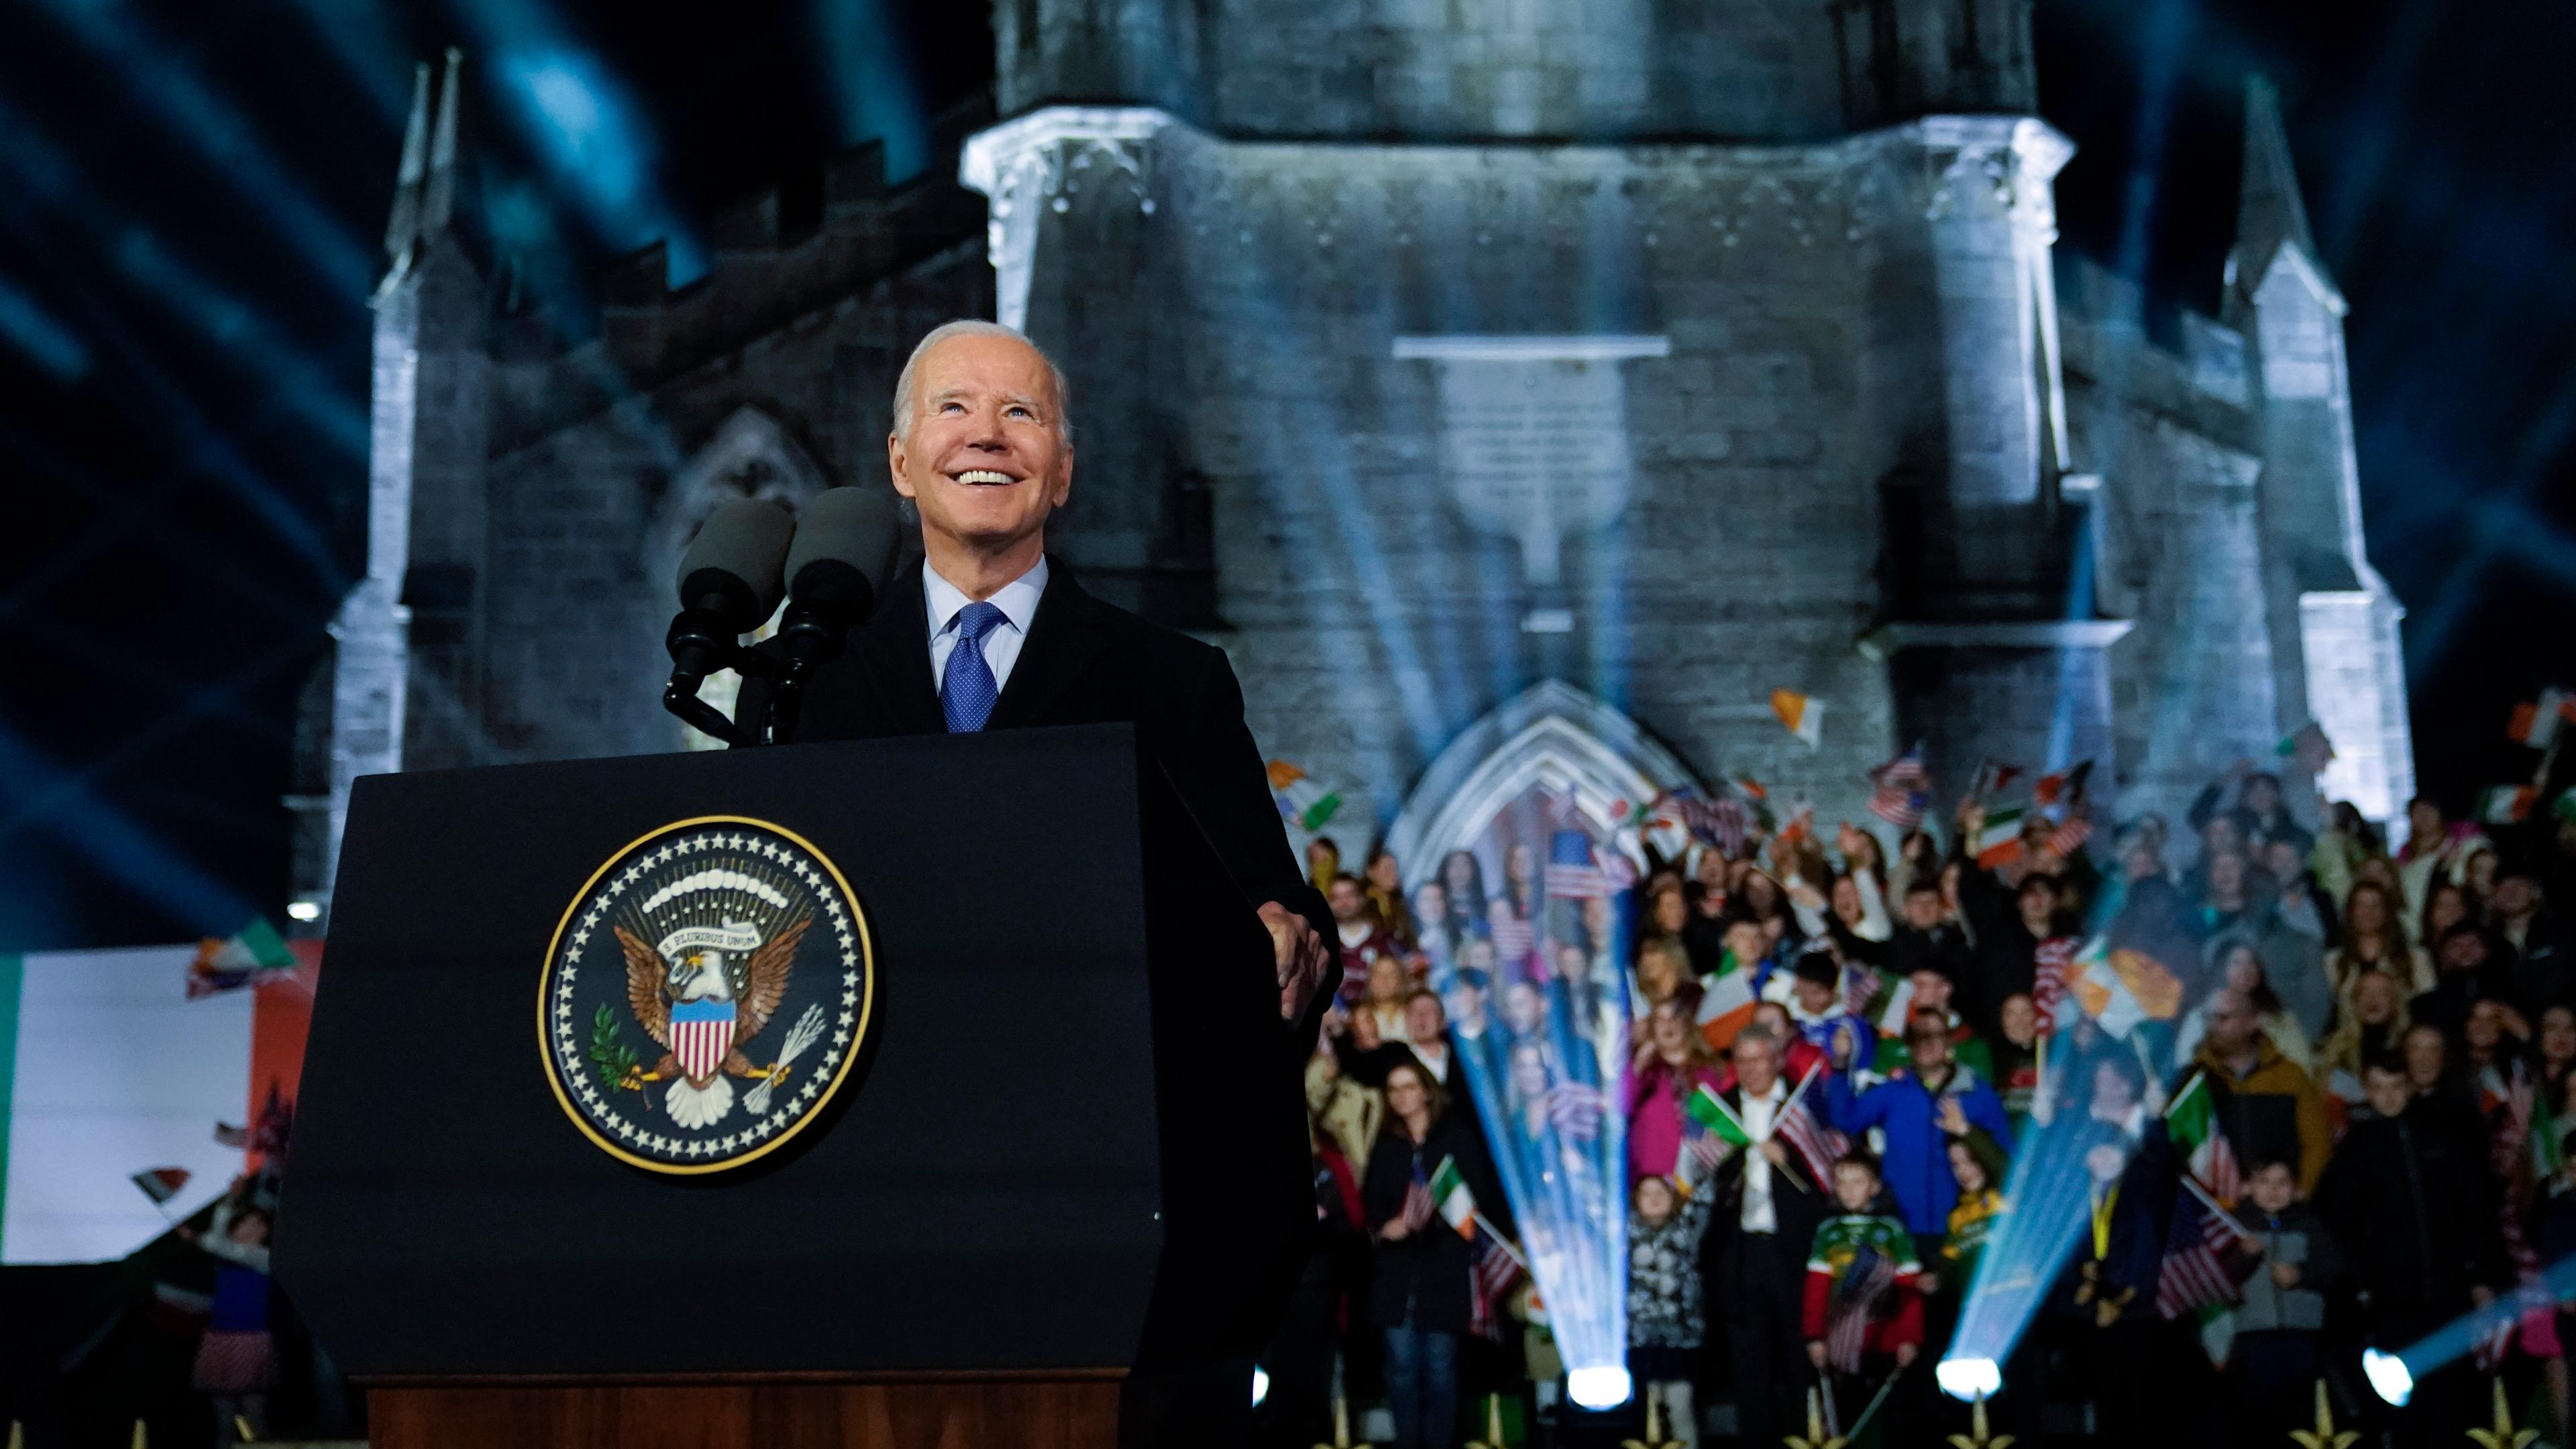 Das Bild zeigt US-Präsident Joe Biden bei der Abschlusszeremonie seines Irland-Besuchs.